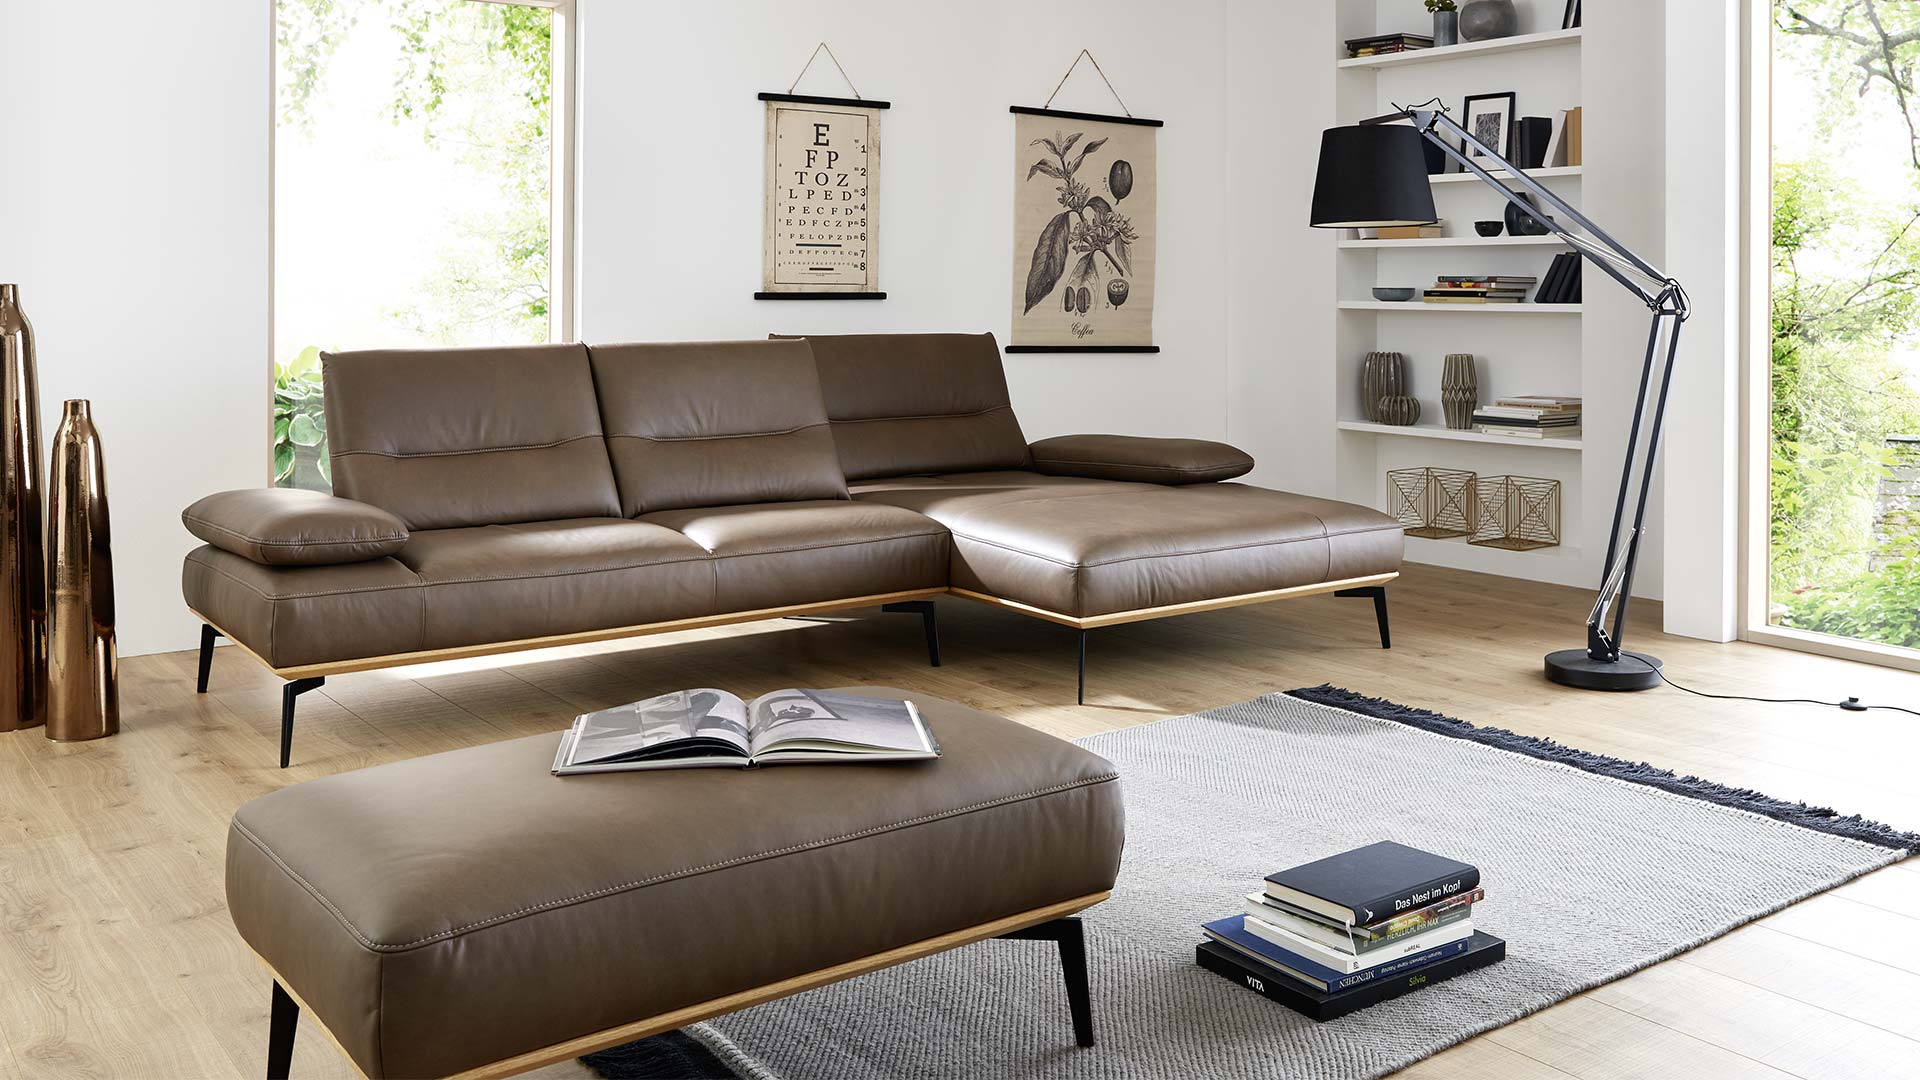 Olivgrün braunes Sofa mit verstellter Sitztiefe, Lederbezug